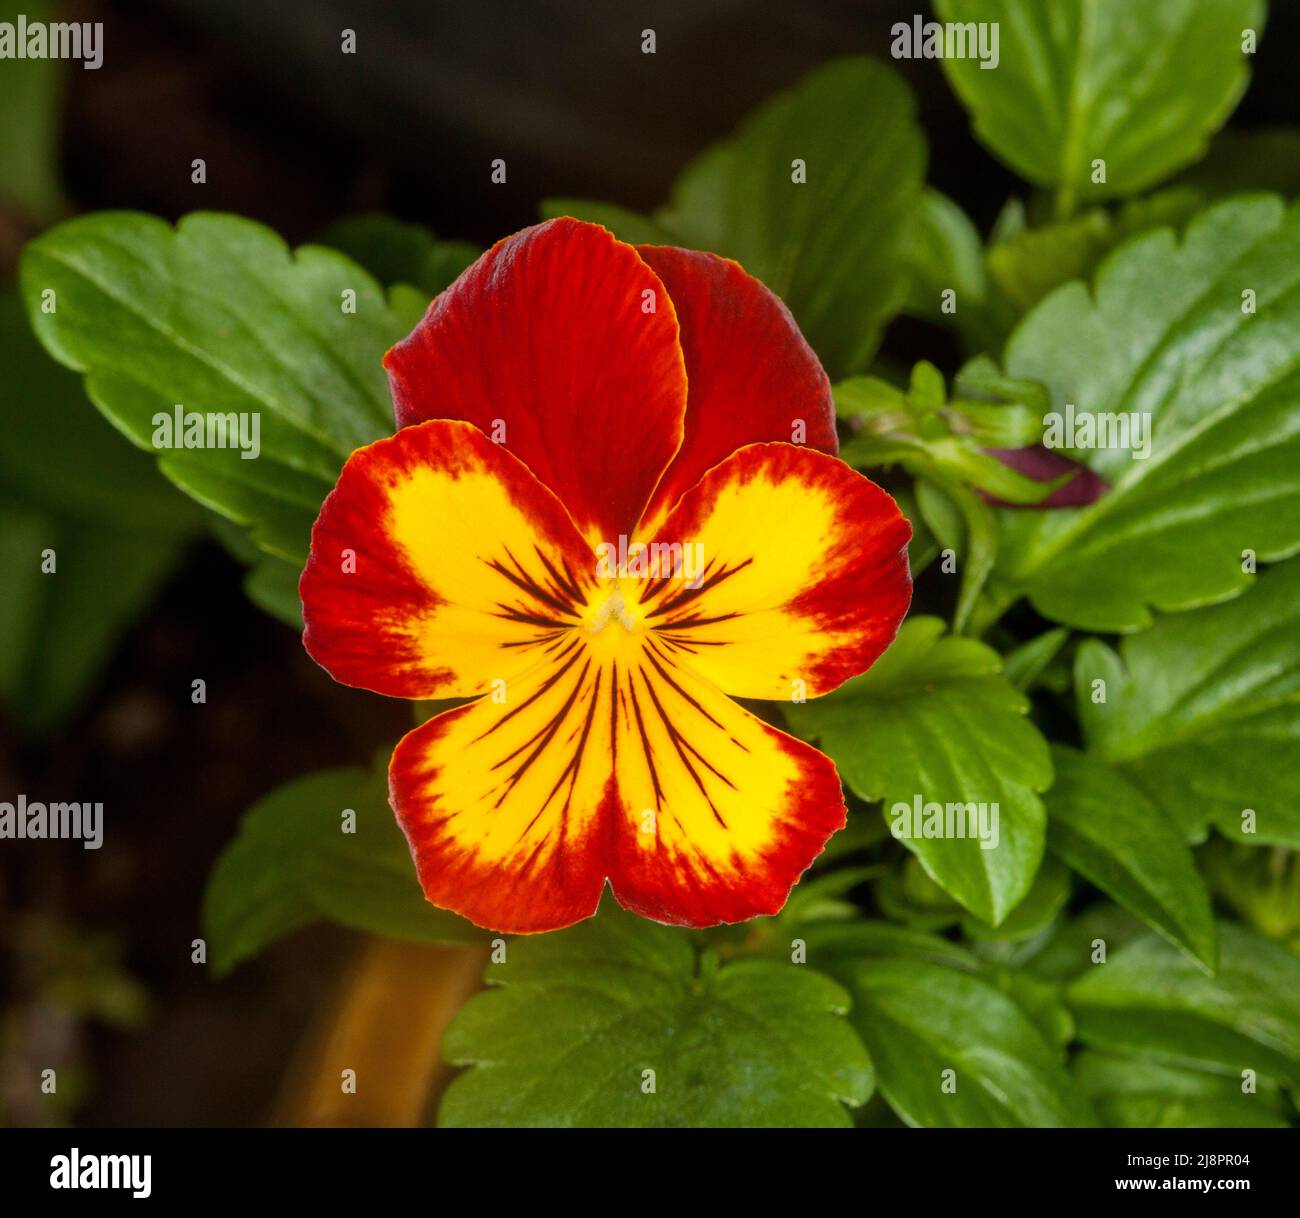 Belle fleur rouge vif et jaune de pansy / alto, une plante de jardin annuelle, sur fond de feuilles vert vif Banque D'Images